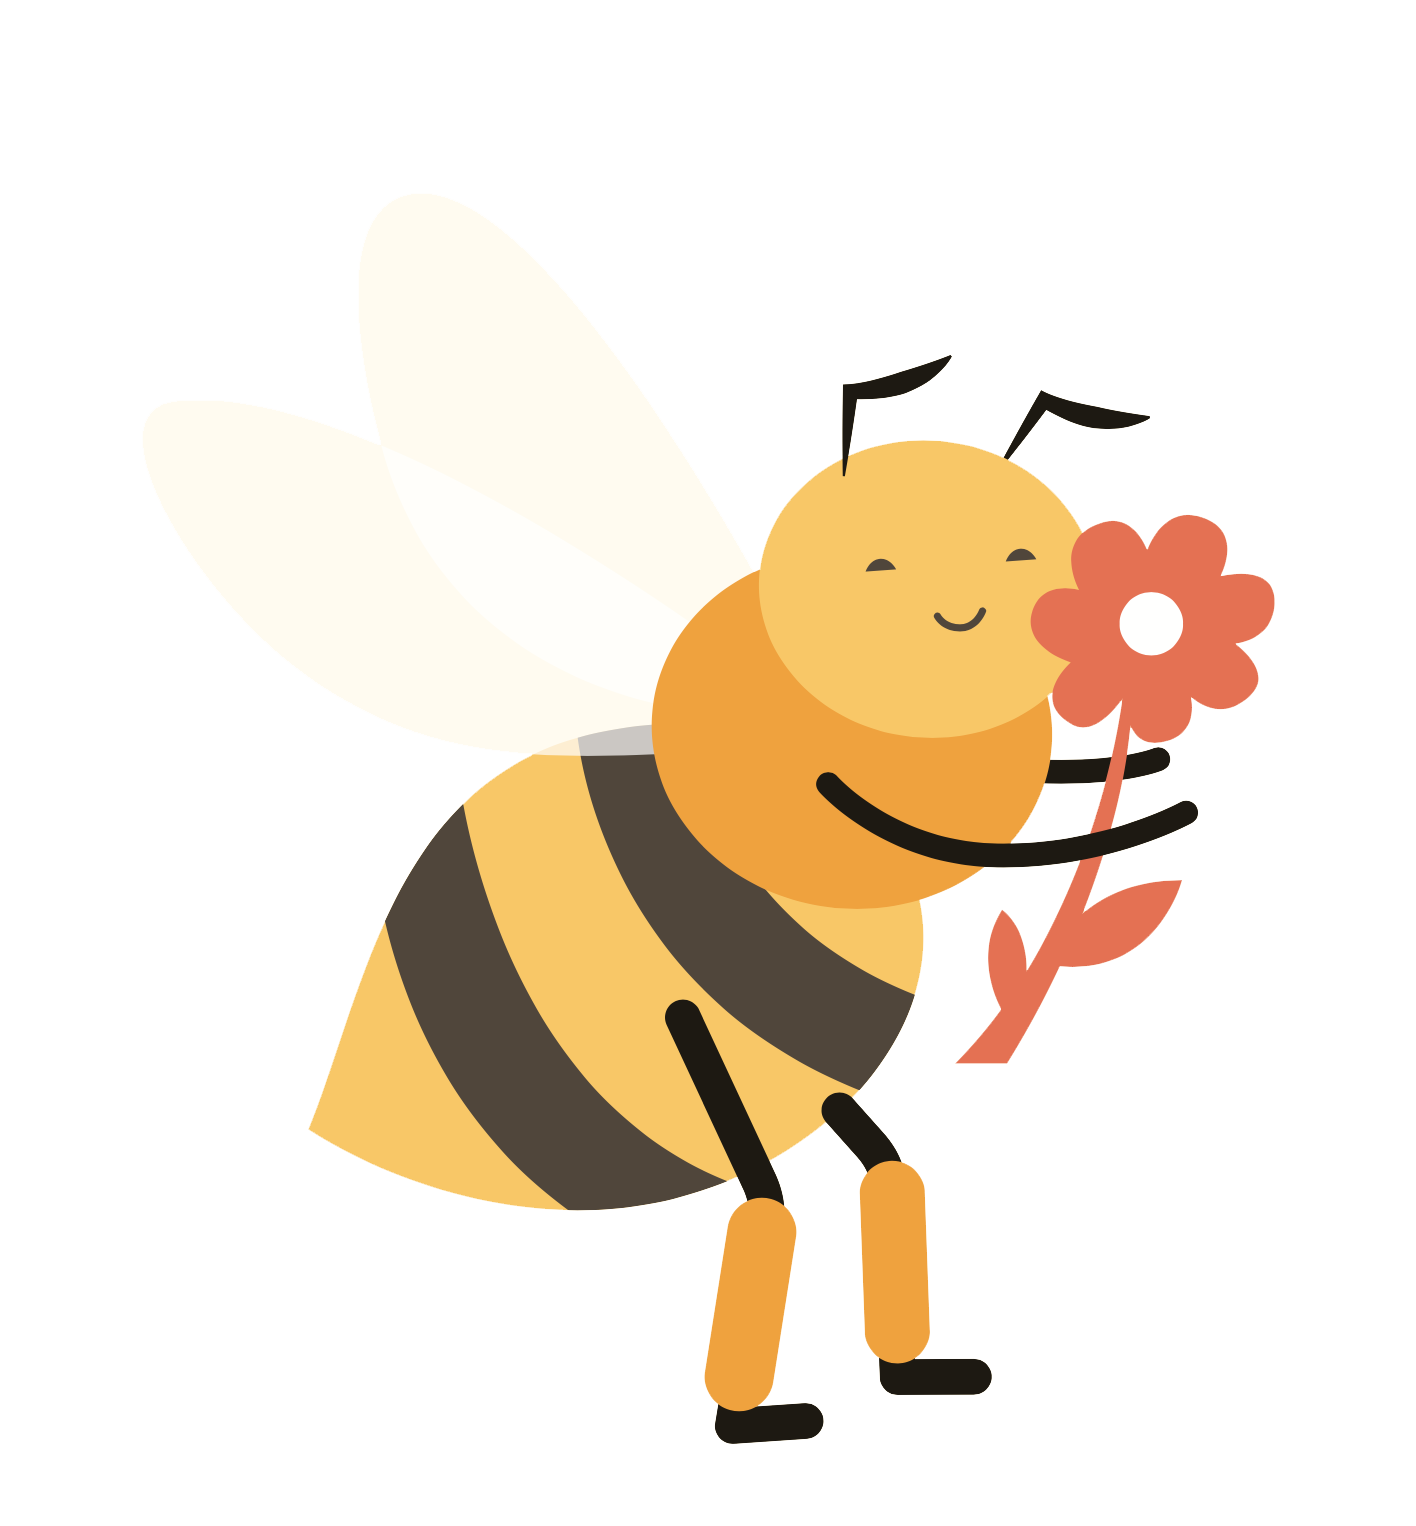 Queen Bee: Facts & Curiosities of the Queen Honey Bee